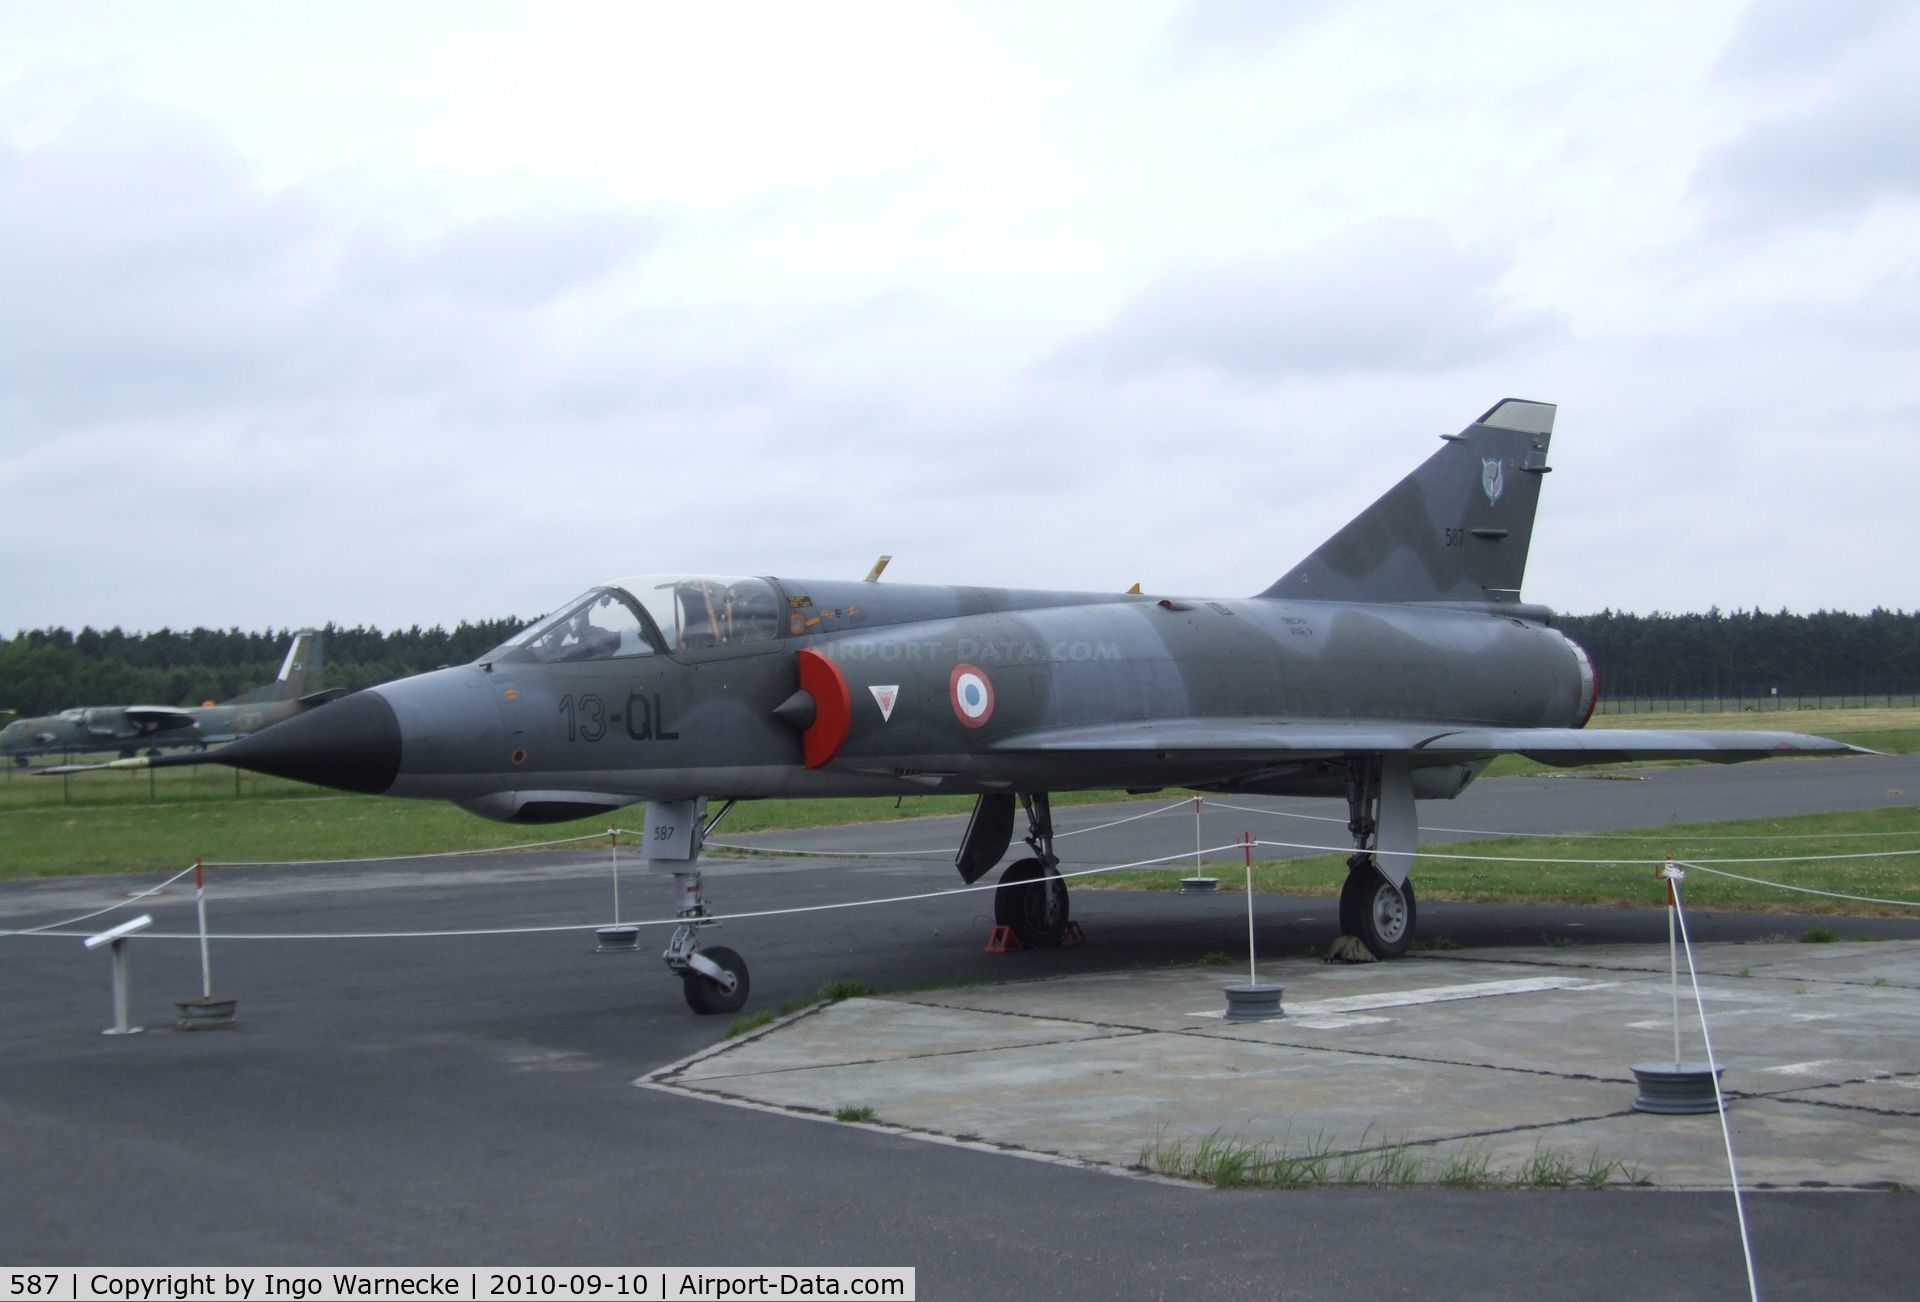 587, Dassault Mirage IIIE C/N 587, Dassault Mirage III E at the Luftwaffenmuseum, Berlin-Gatow